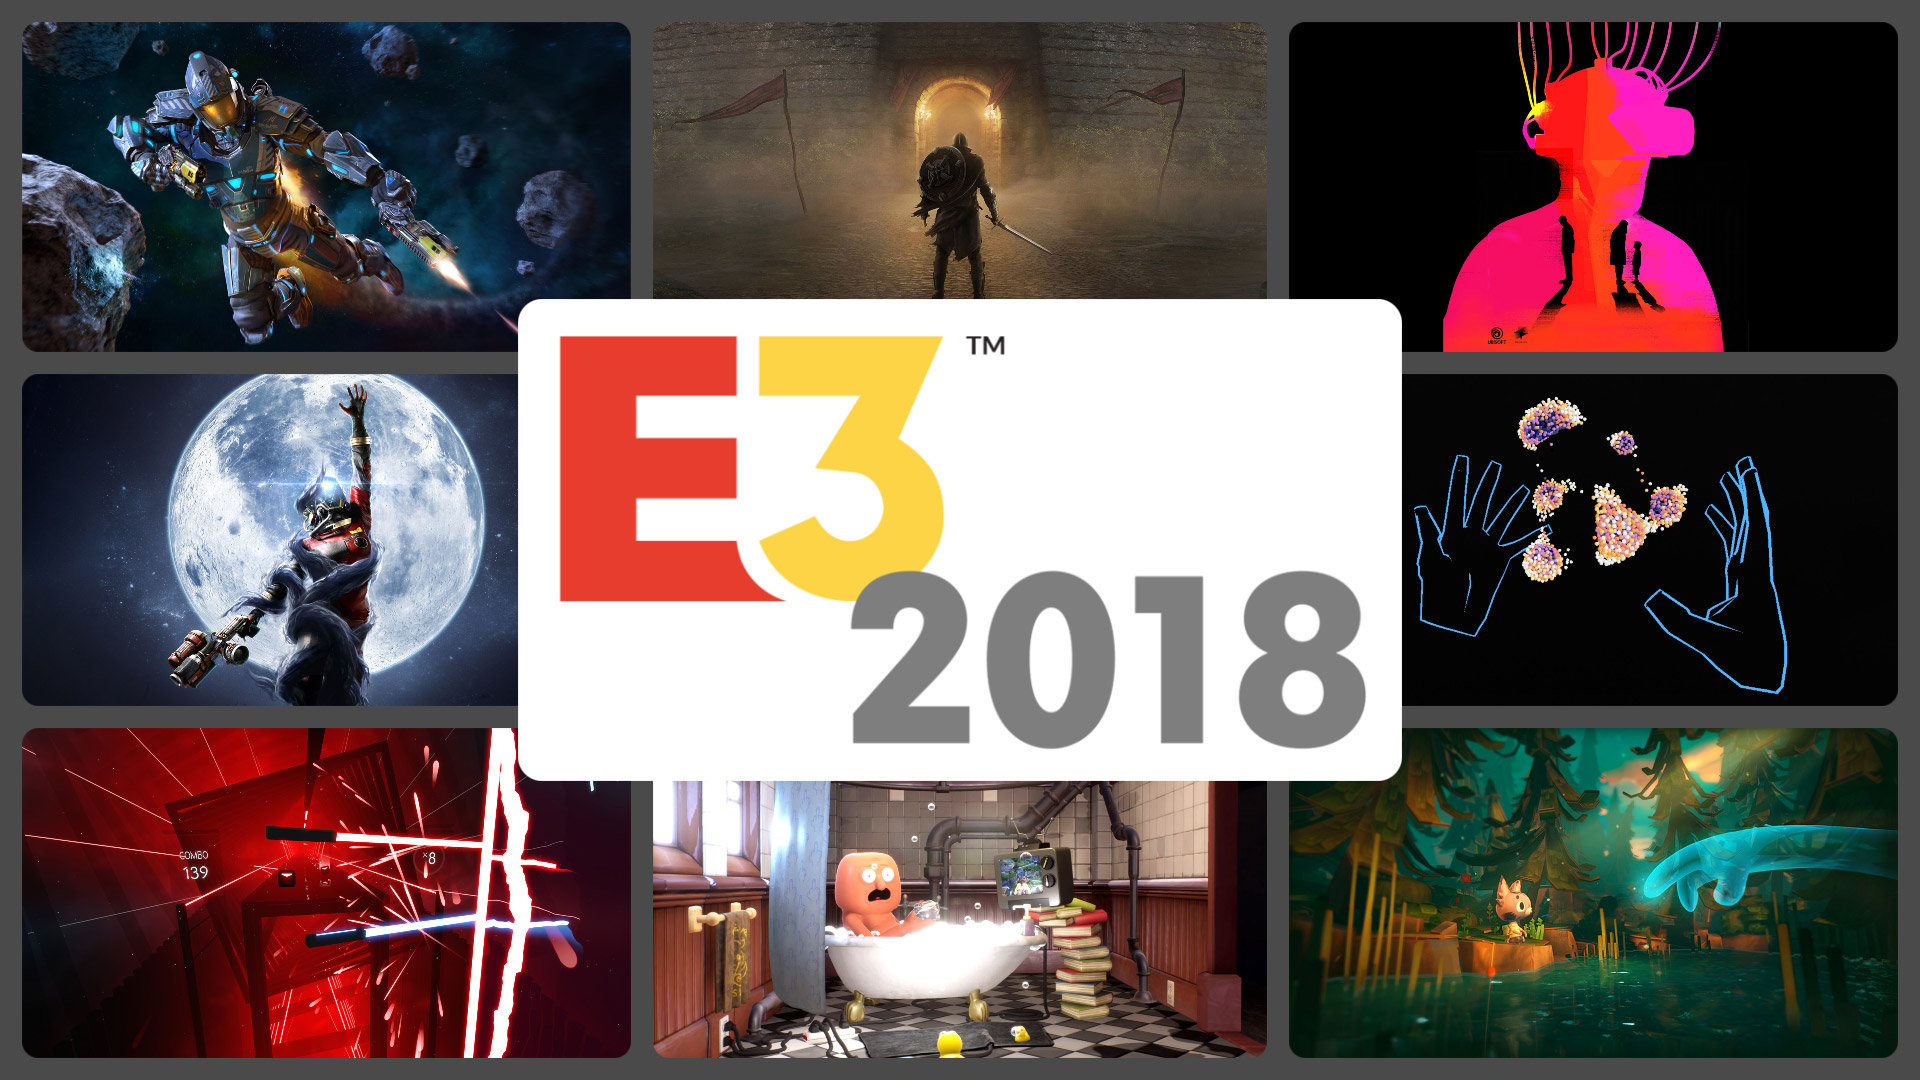 Night Call - E3 2018 Reveal Trailer 